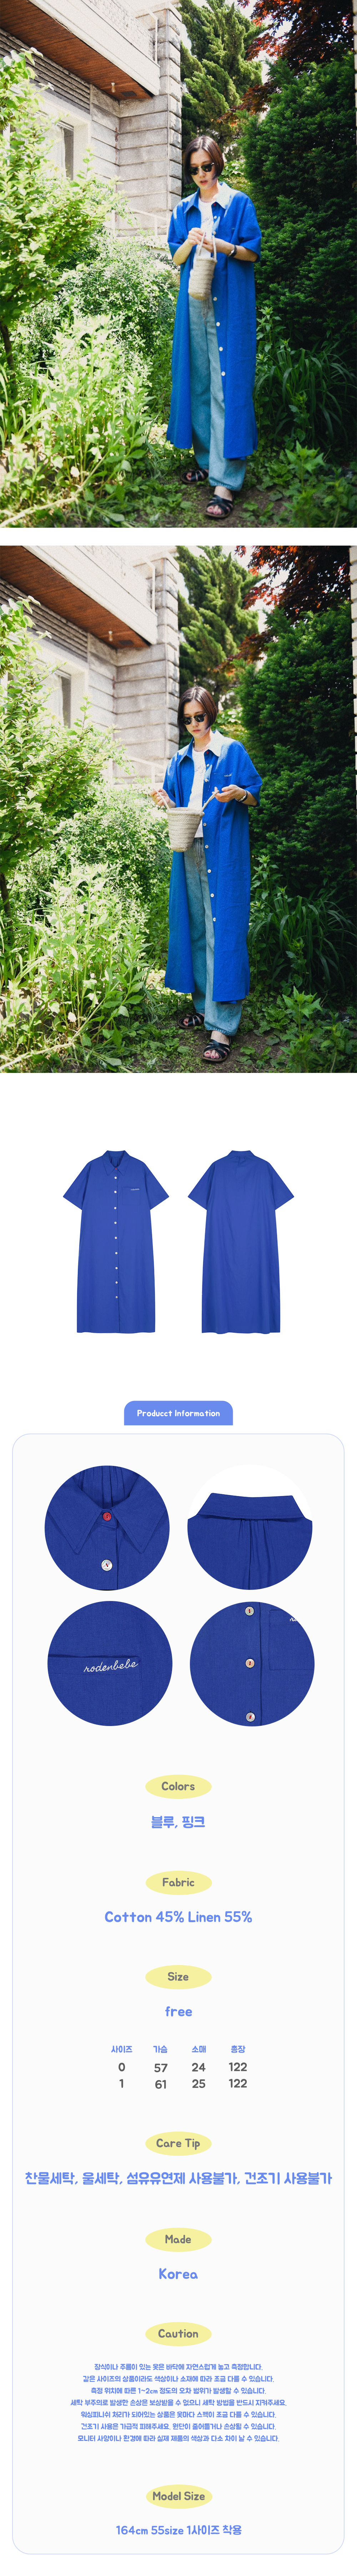 maxi_shirt_dress_blue03